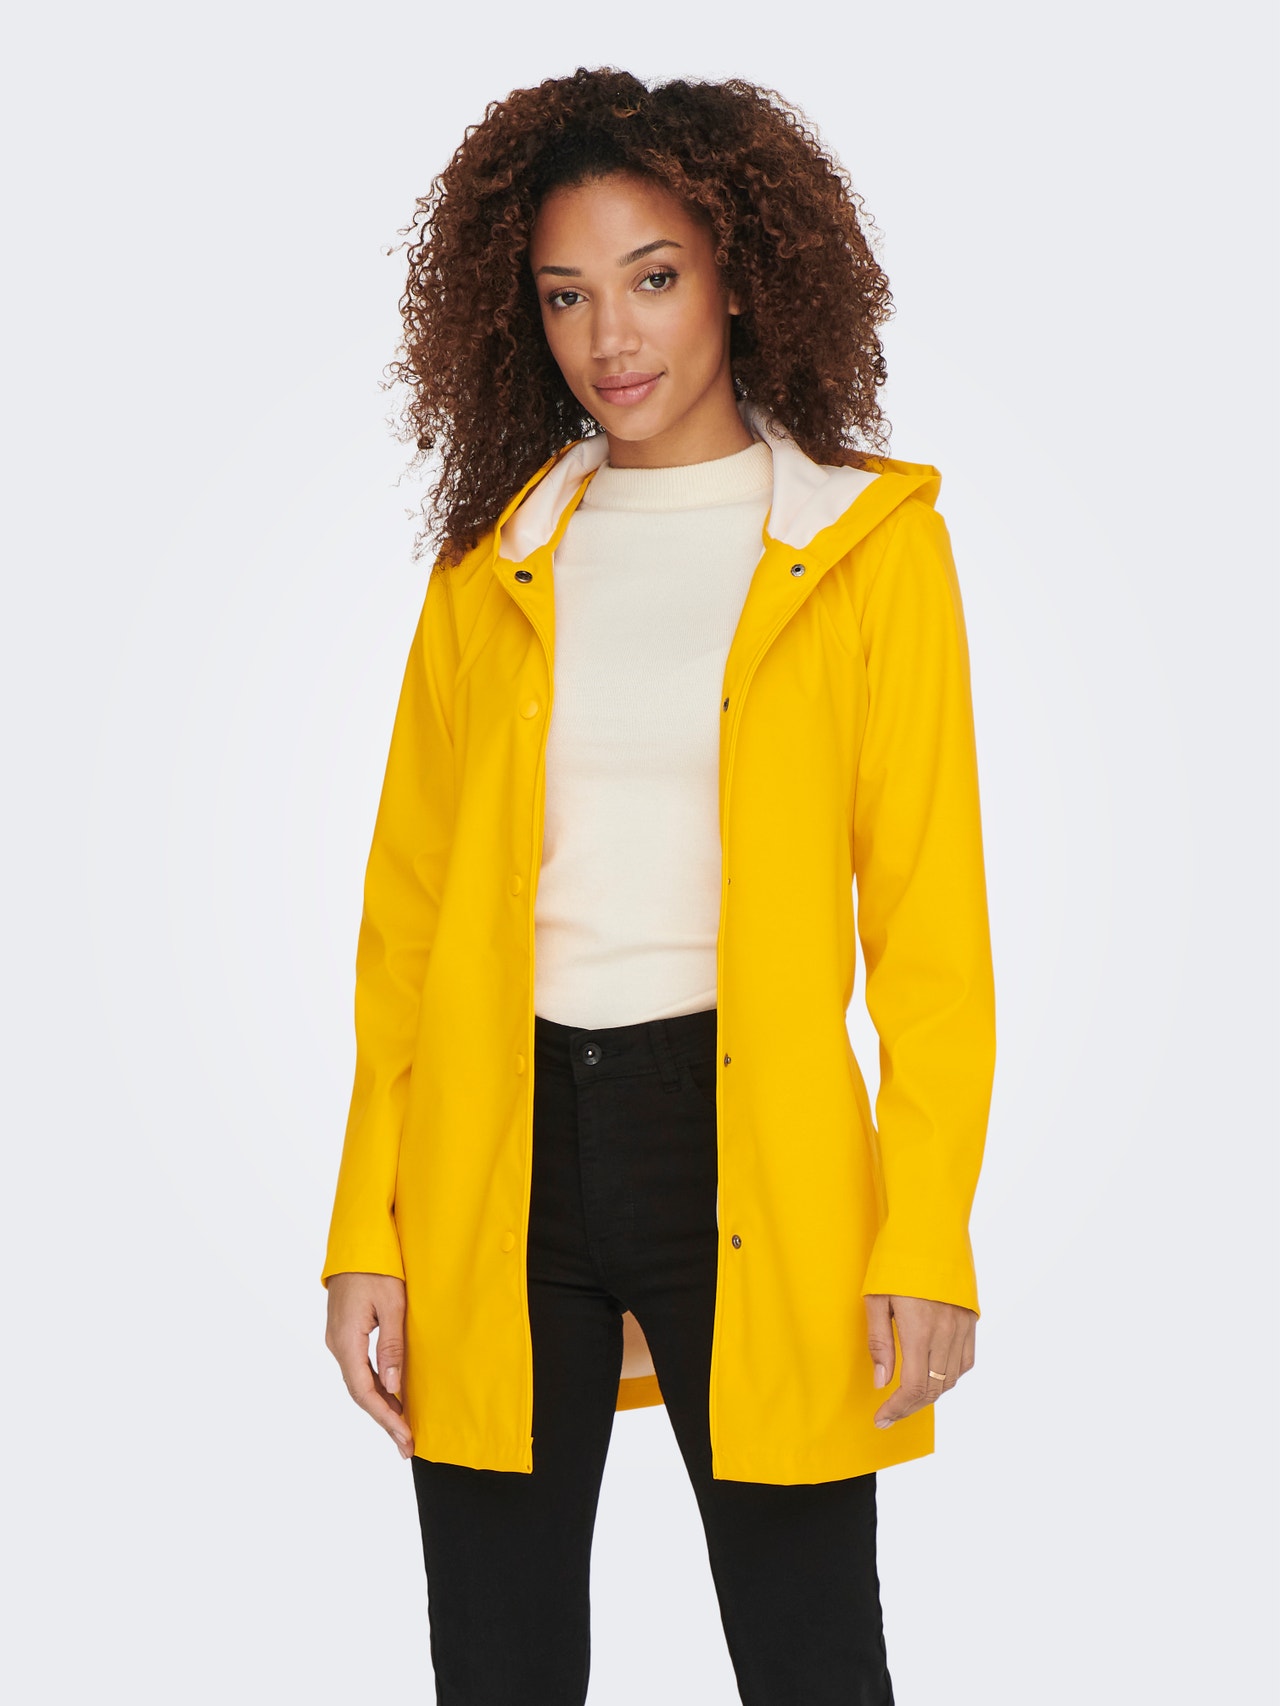 Chubasquero largo en color amarillo, con capucha, dos bolsillos y